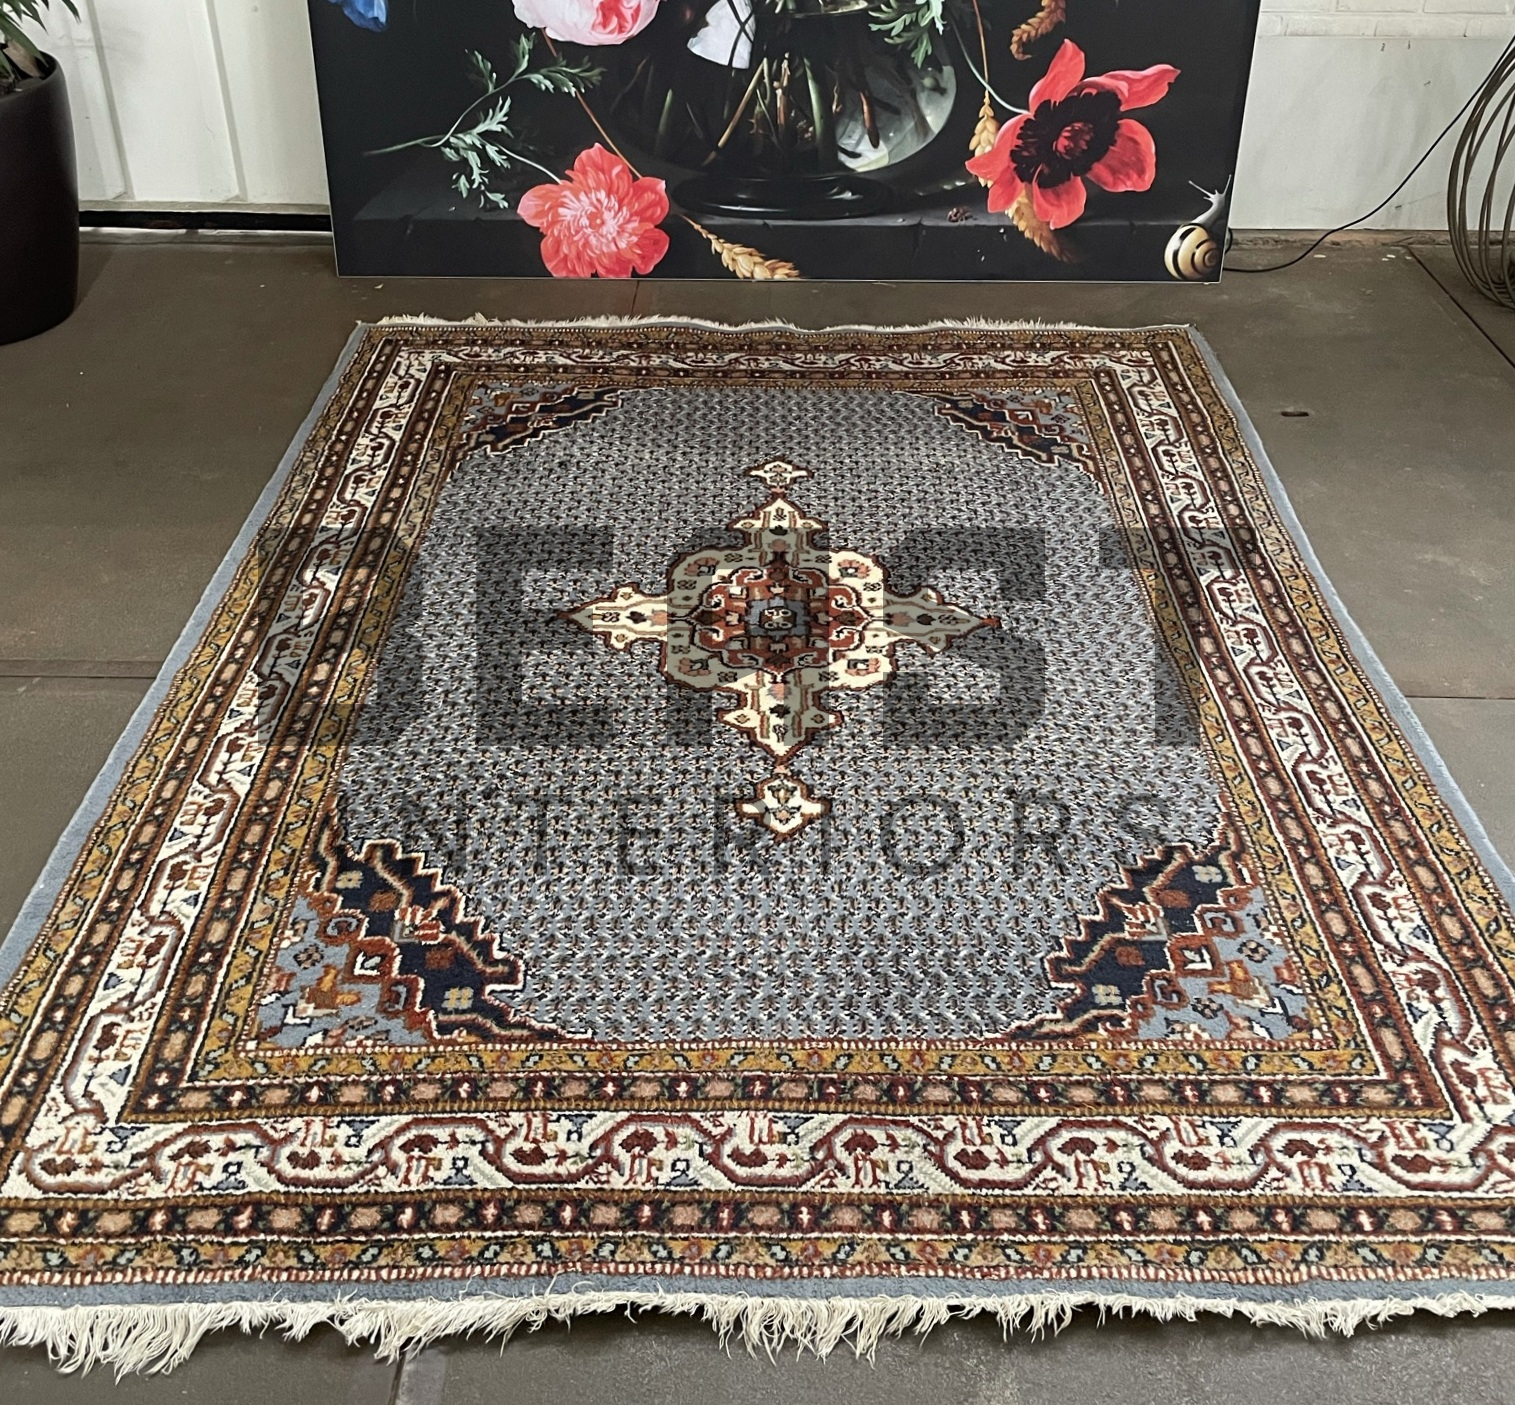 bijvoeglijk naamwoord Goed gevoel Janice Mooie vintage kostbare origineel fraaie handgeknoopt sarouk mir perzisch  tapijt - BEAST Interiors